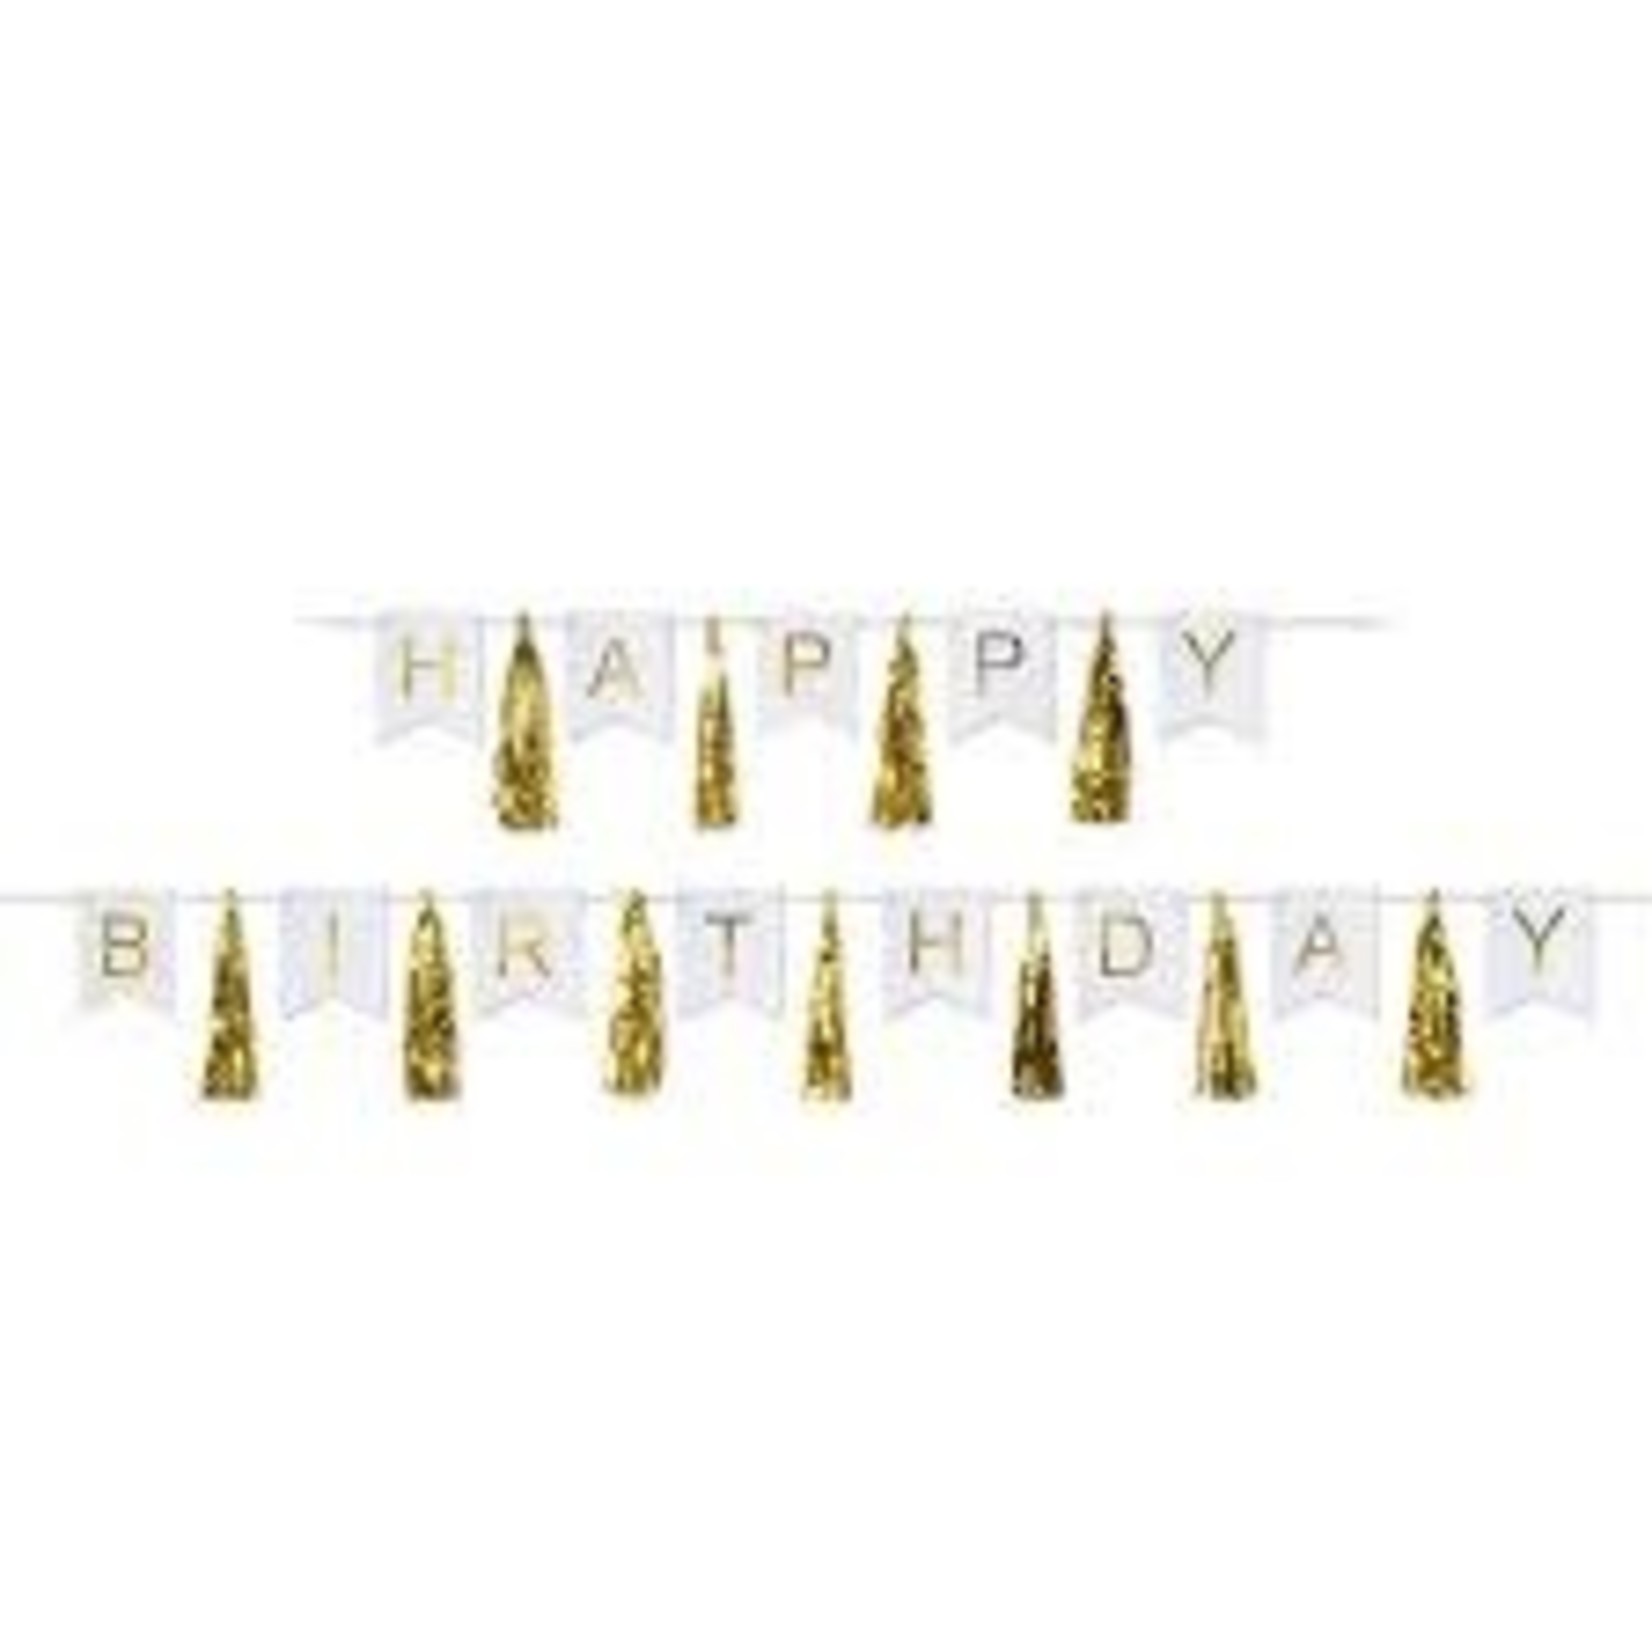 Beistle Gold Happy Birthday Banner w/ Tassles - 6ft.